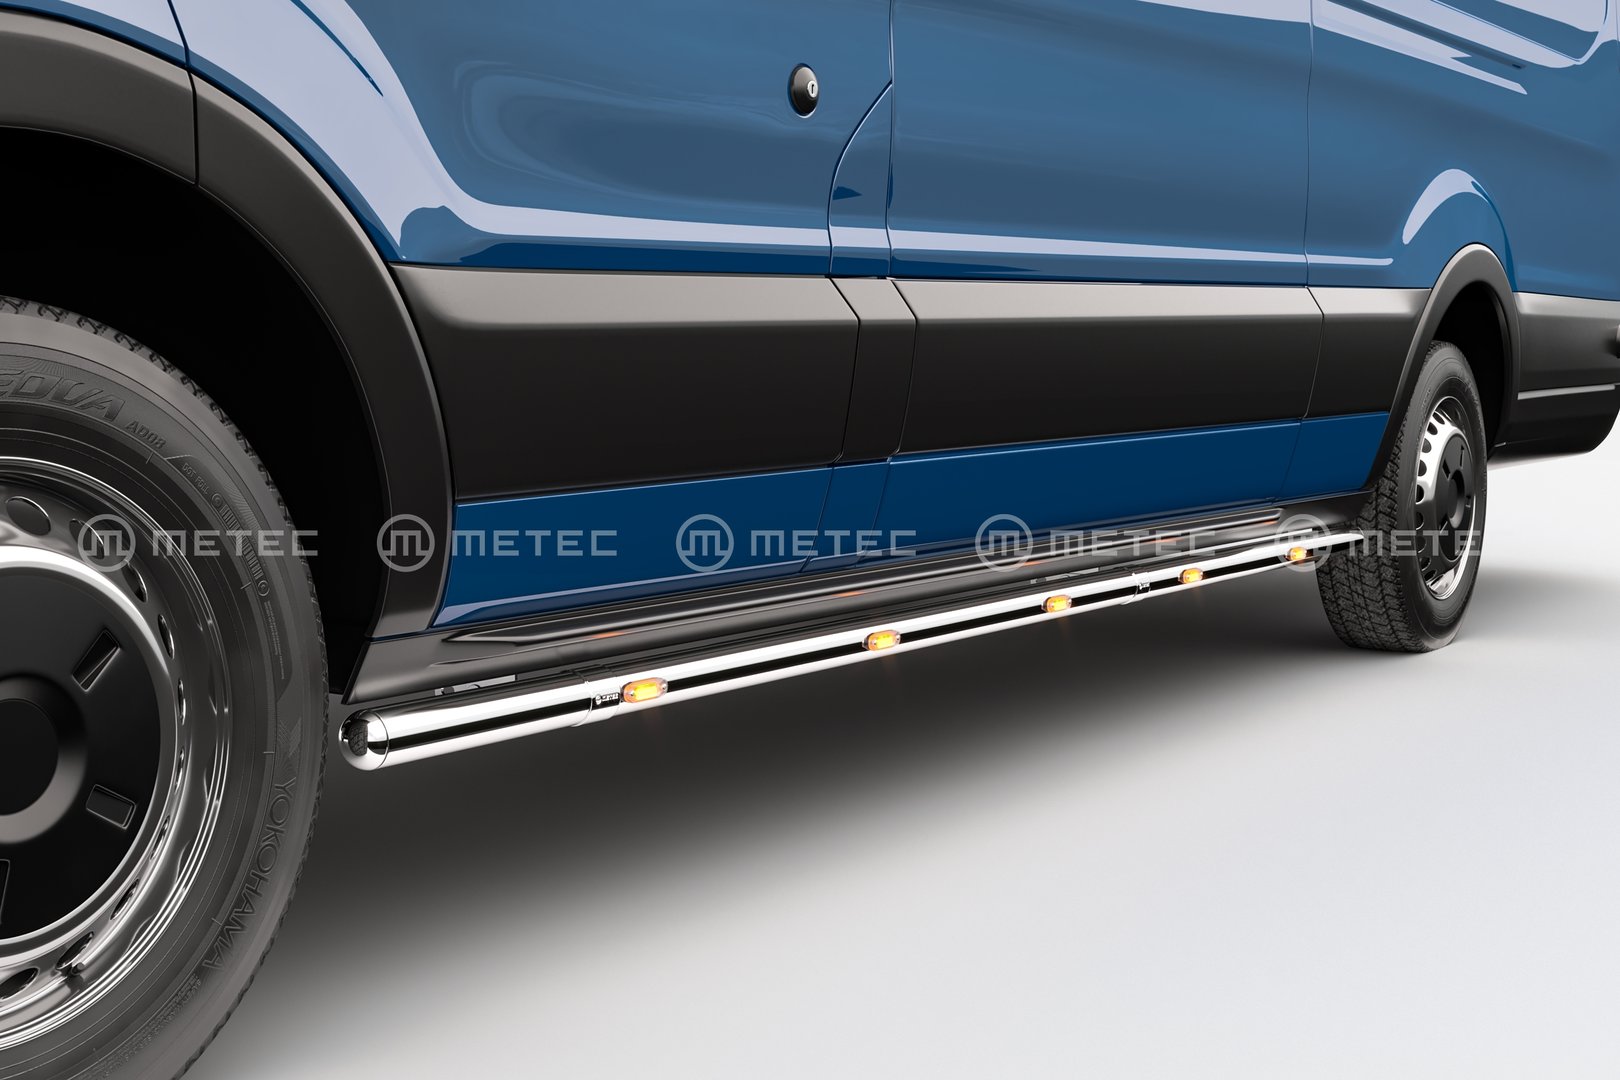 Ford Transit Van LED-Kylkiputket (Metec)